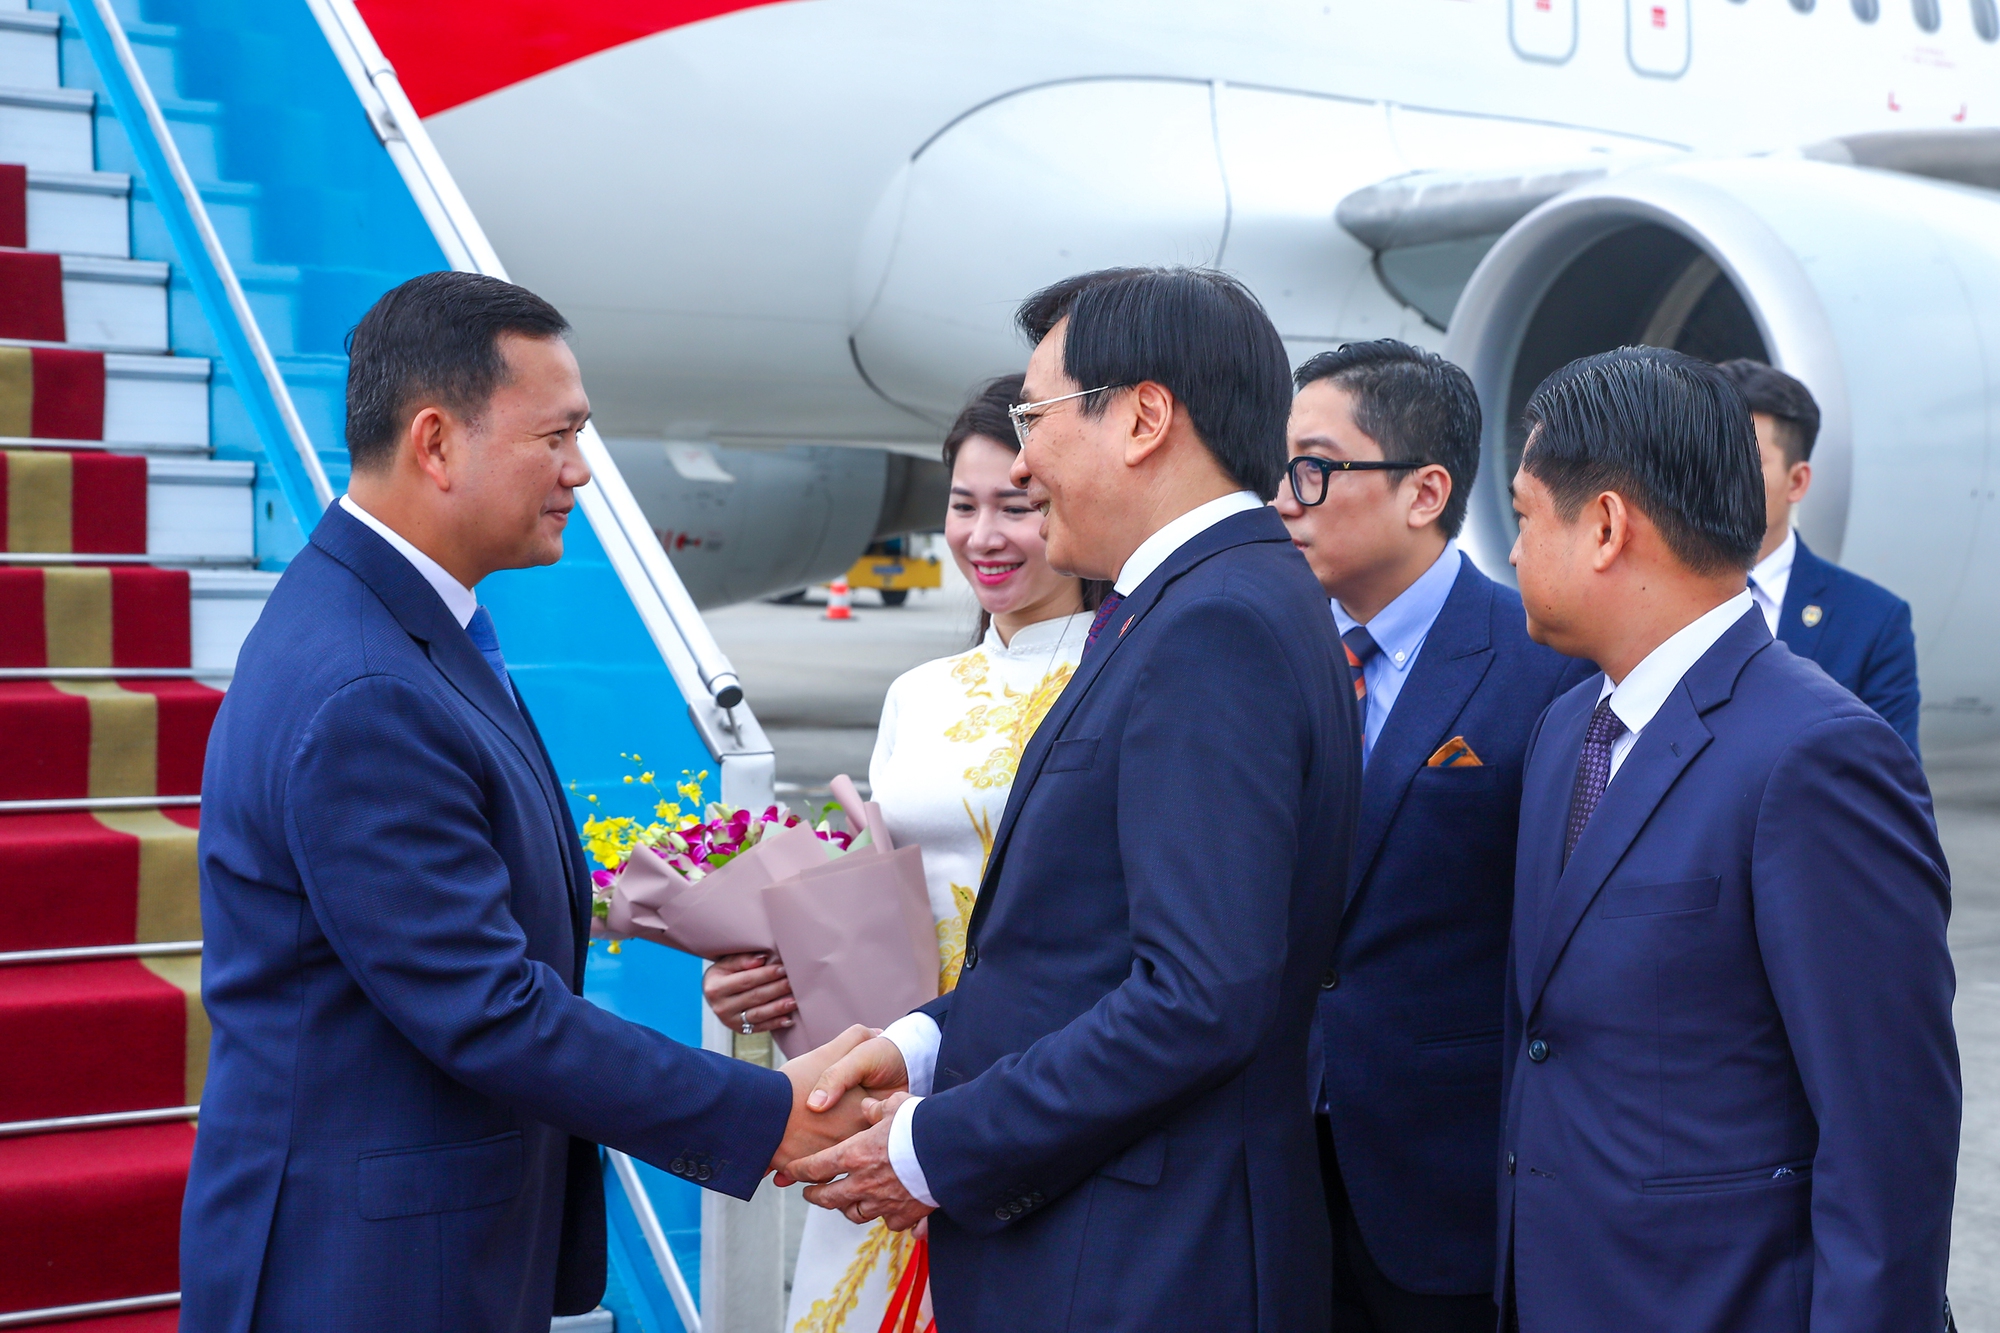 Thủ tướng Phạm Minh Chính chủ trì lễ đón và hội đàm với Thủ tướng Campuchia- Ảnh 9.